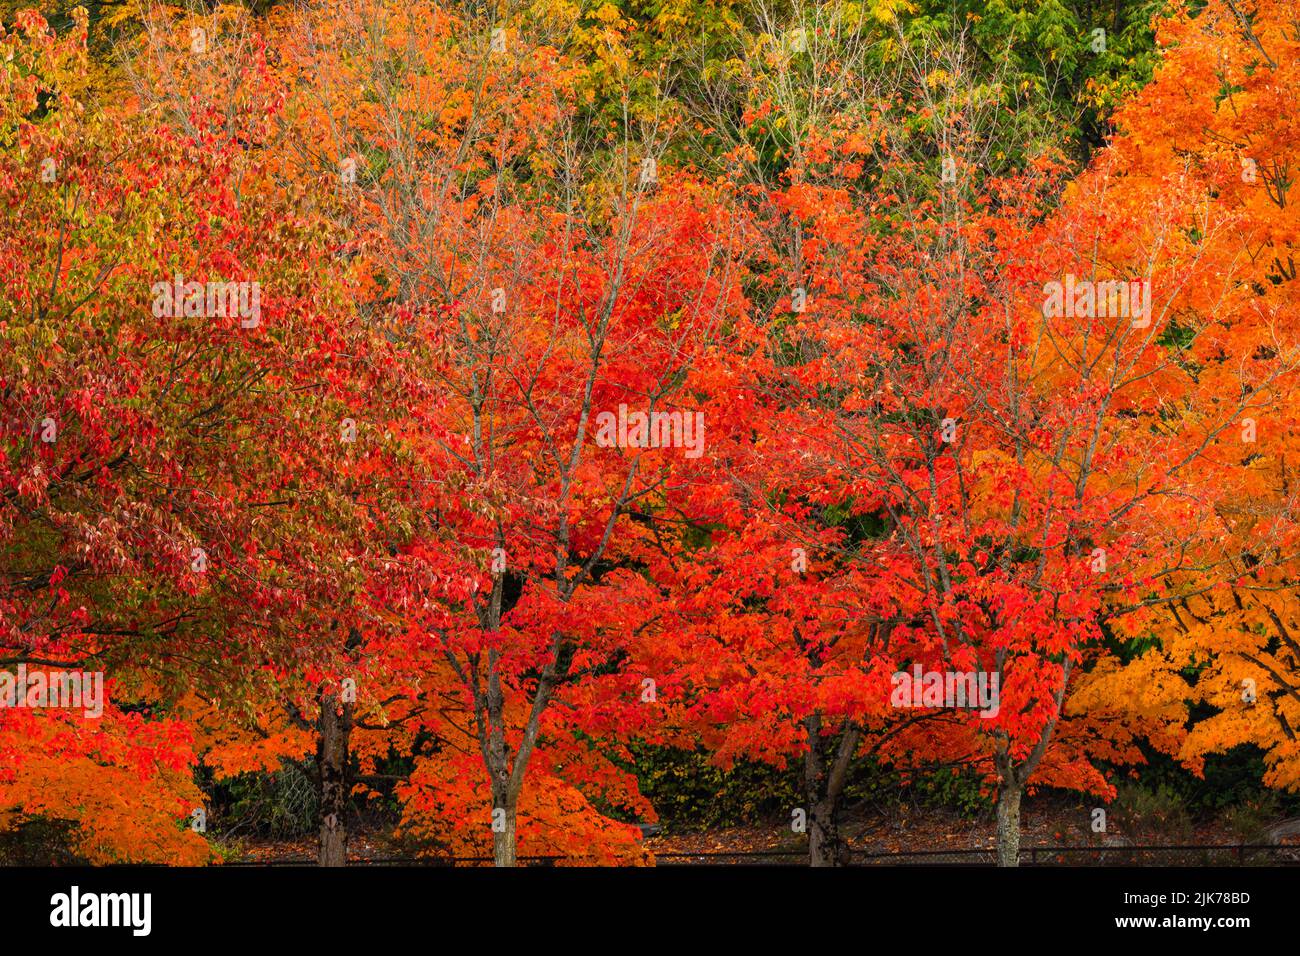 WA21810-00...WASHINGTON - couleur d'automne au Gene Coulon Memorial Beach Park situé sur les rives du lac Washington. Banque D'Images